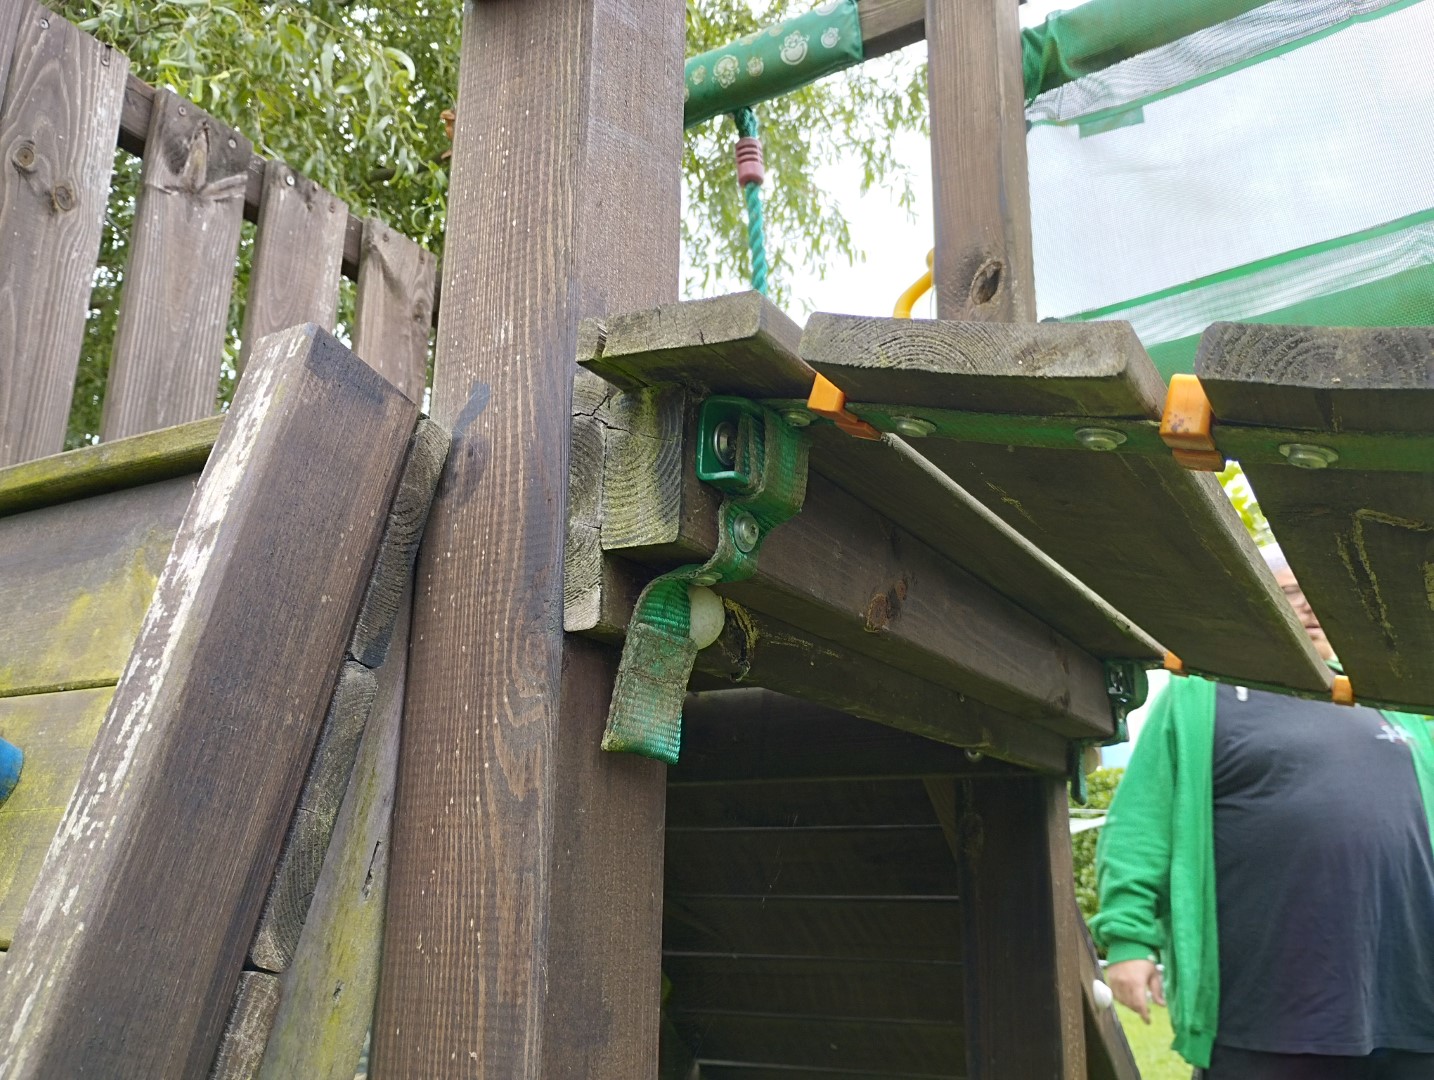 Klettergerüst Spielturm Rutsche Schaukel Sandkasten Jungle Gym restaurieren reparieren umbauen Hängebrücke